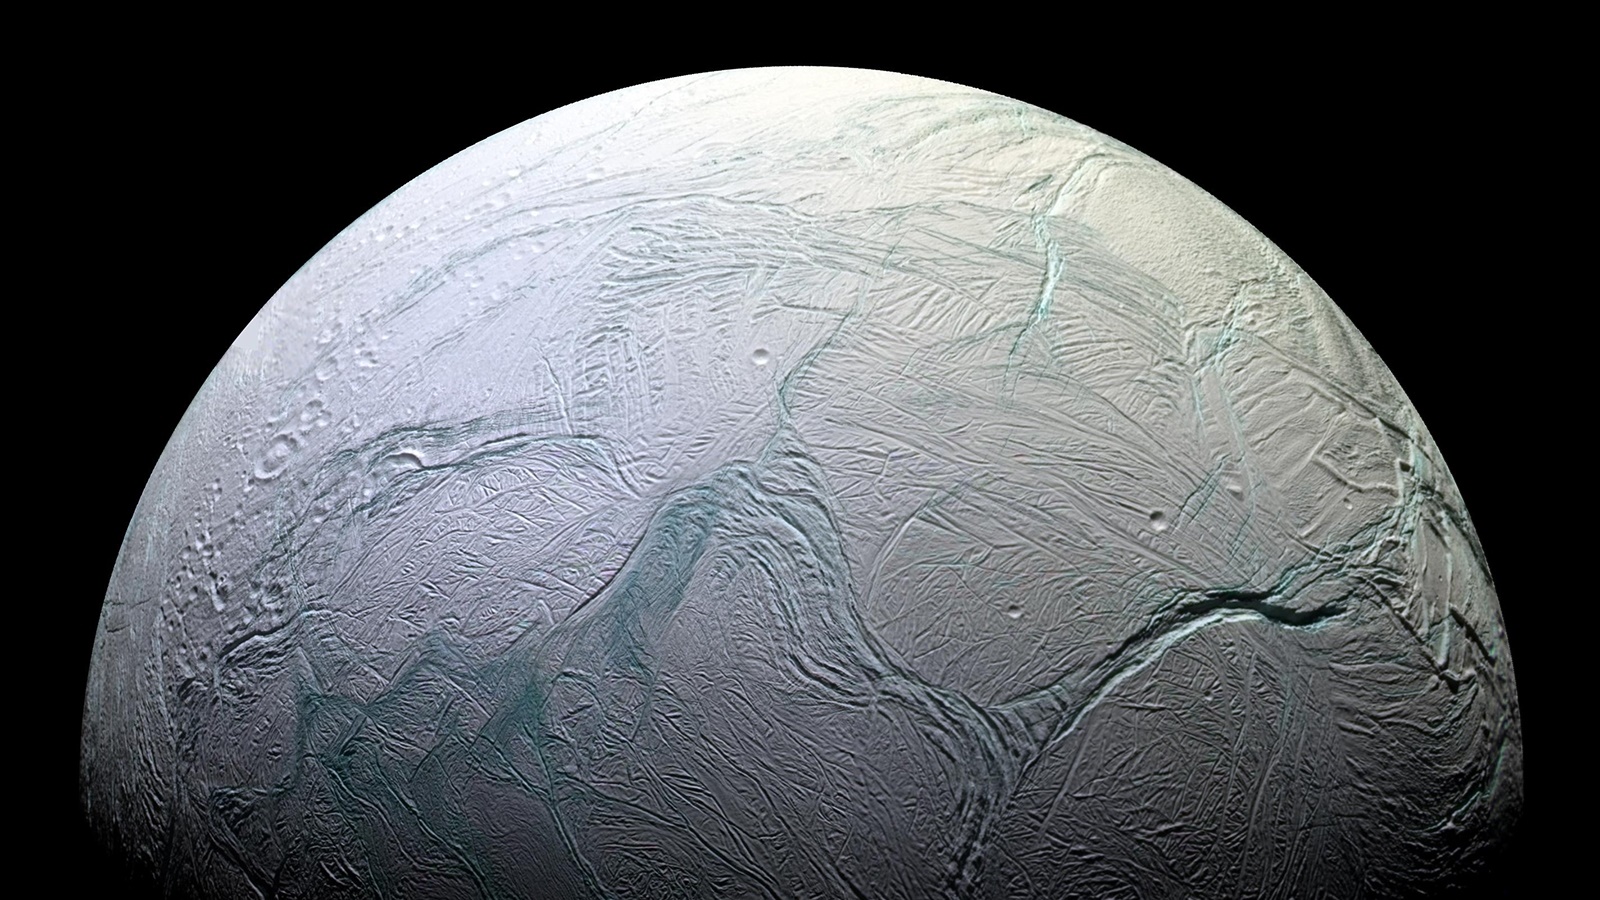 ناسا اعلام کرد: احتمال وجود حیات در قمر زحل/ جایی برای جایگزین زمین